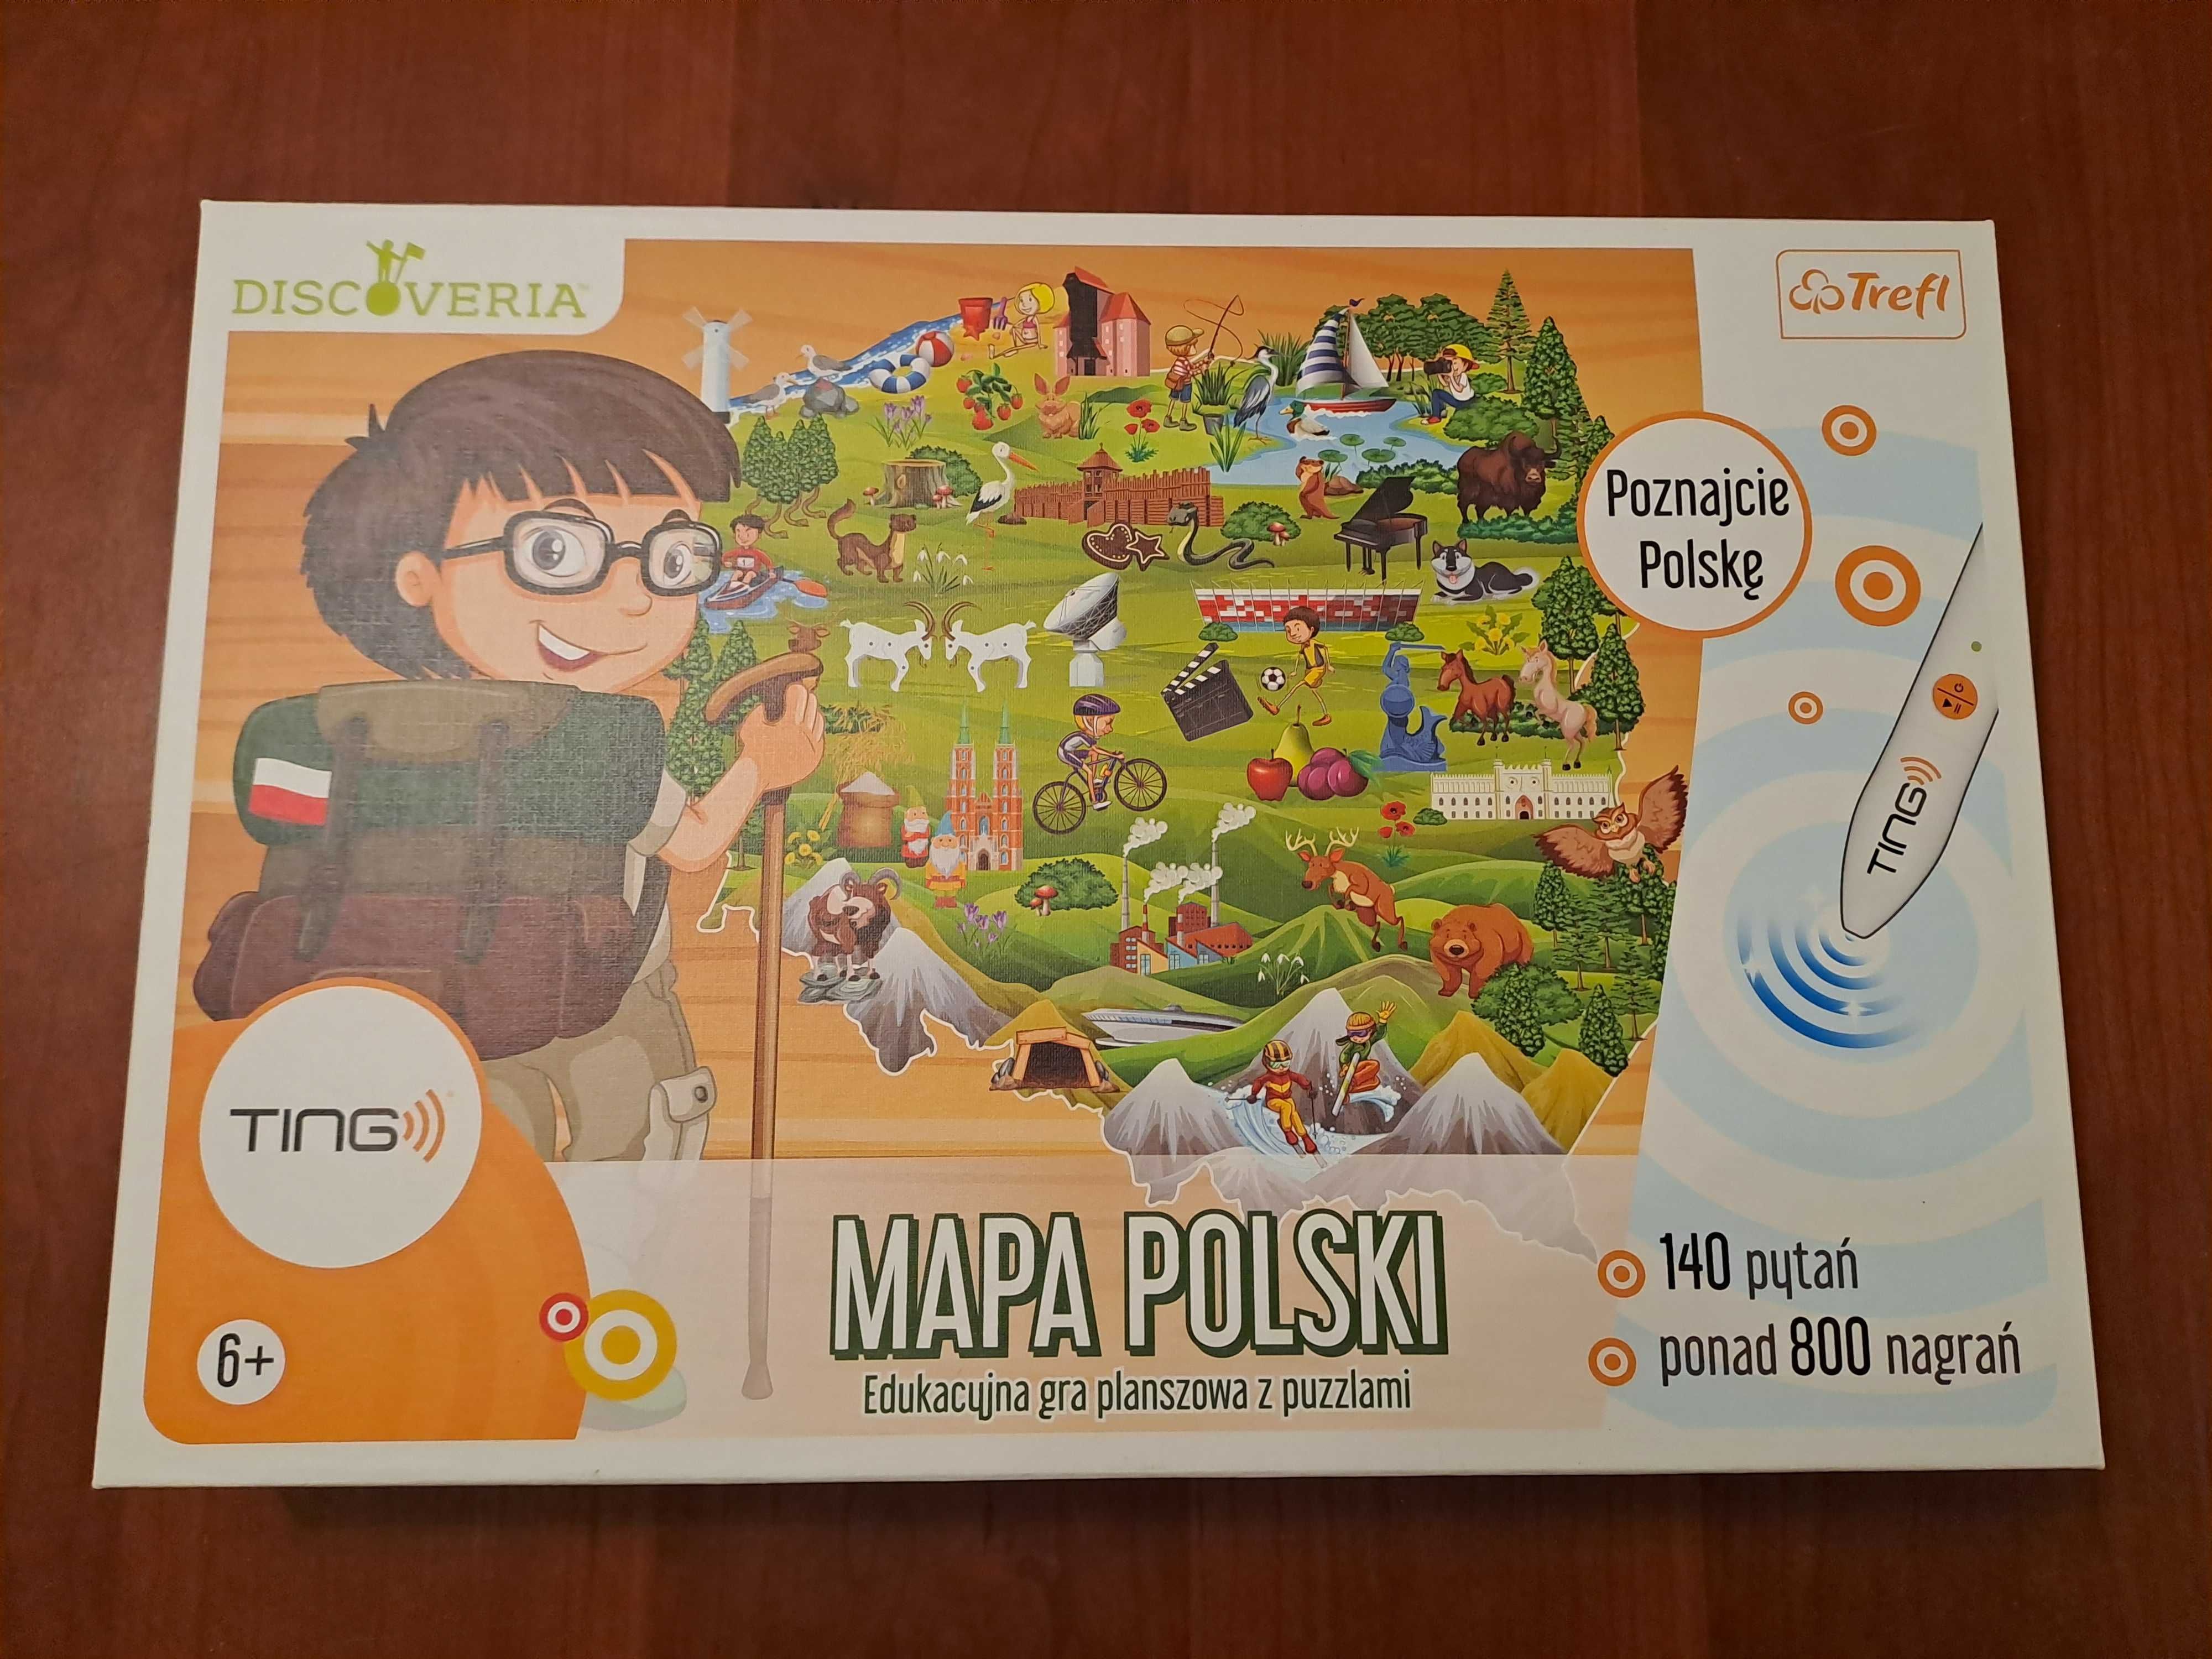 Gry planszowe dla dziecka-5 sekund,ting Mapa Polski, Wiem, Gdybyś był